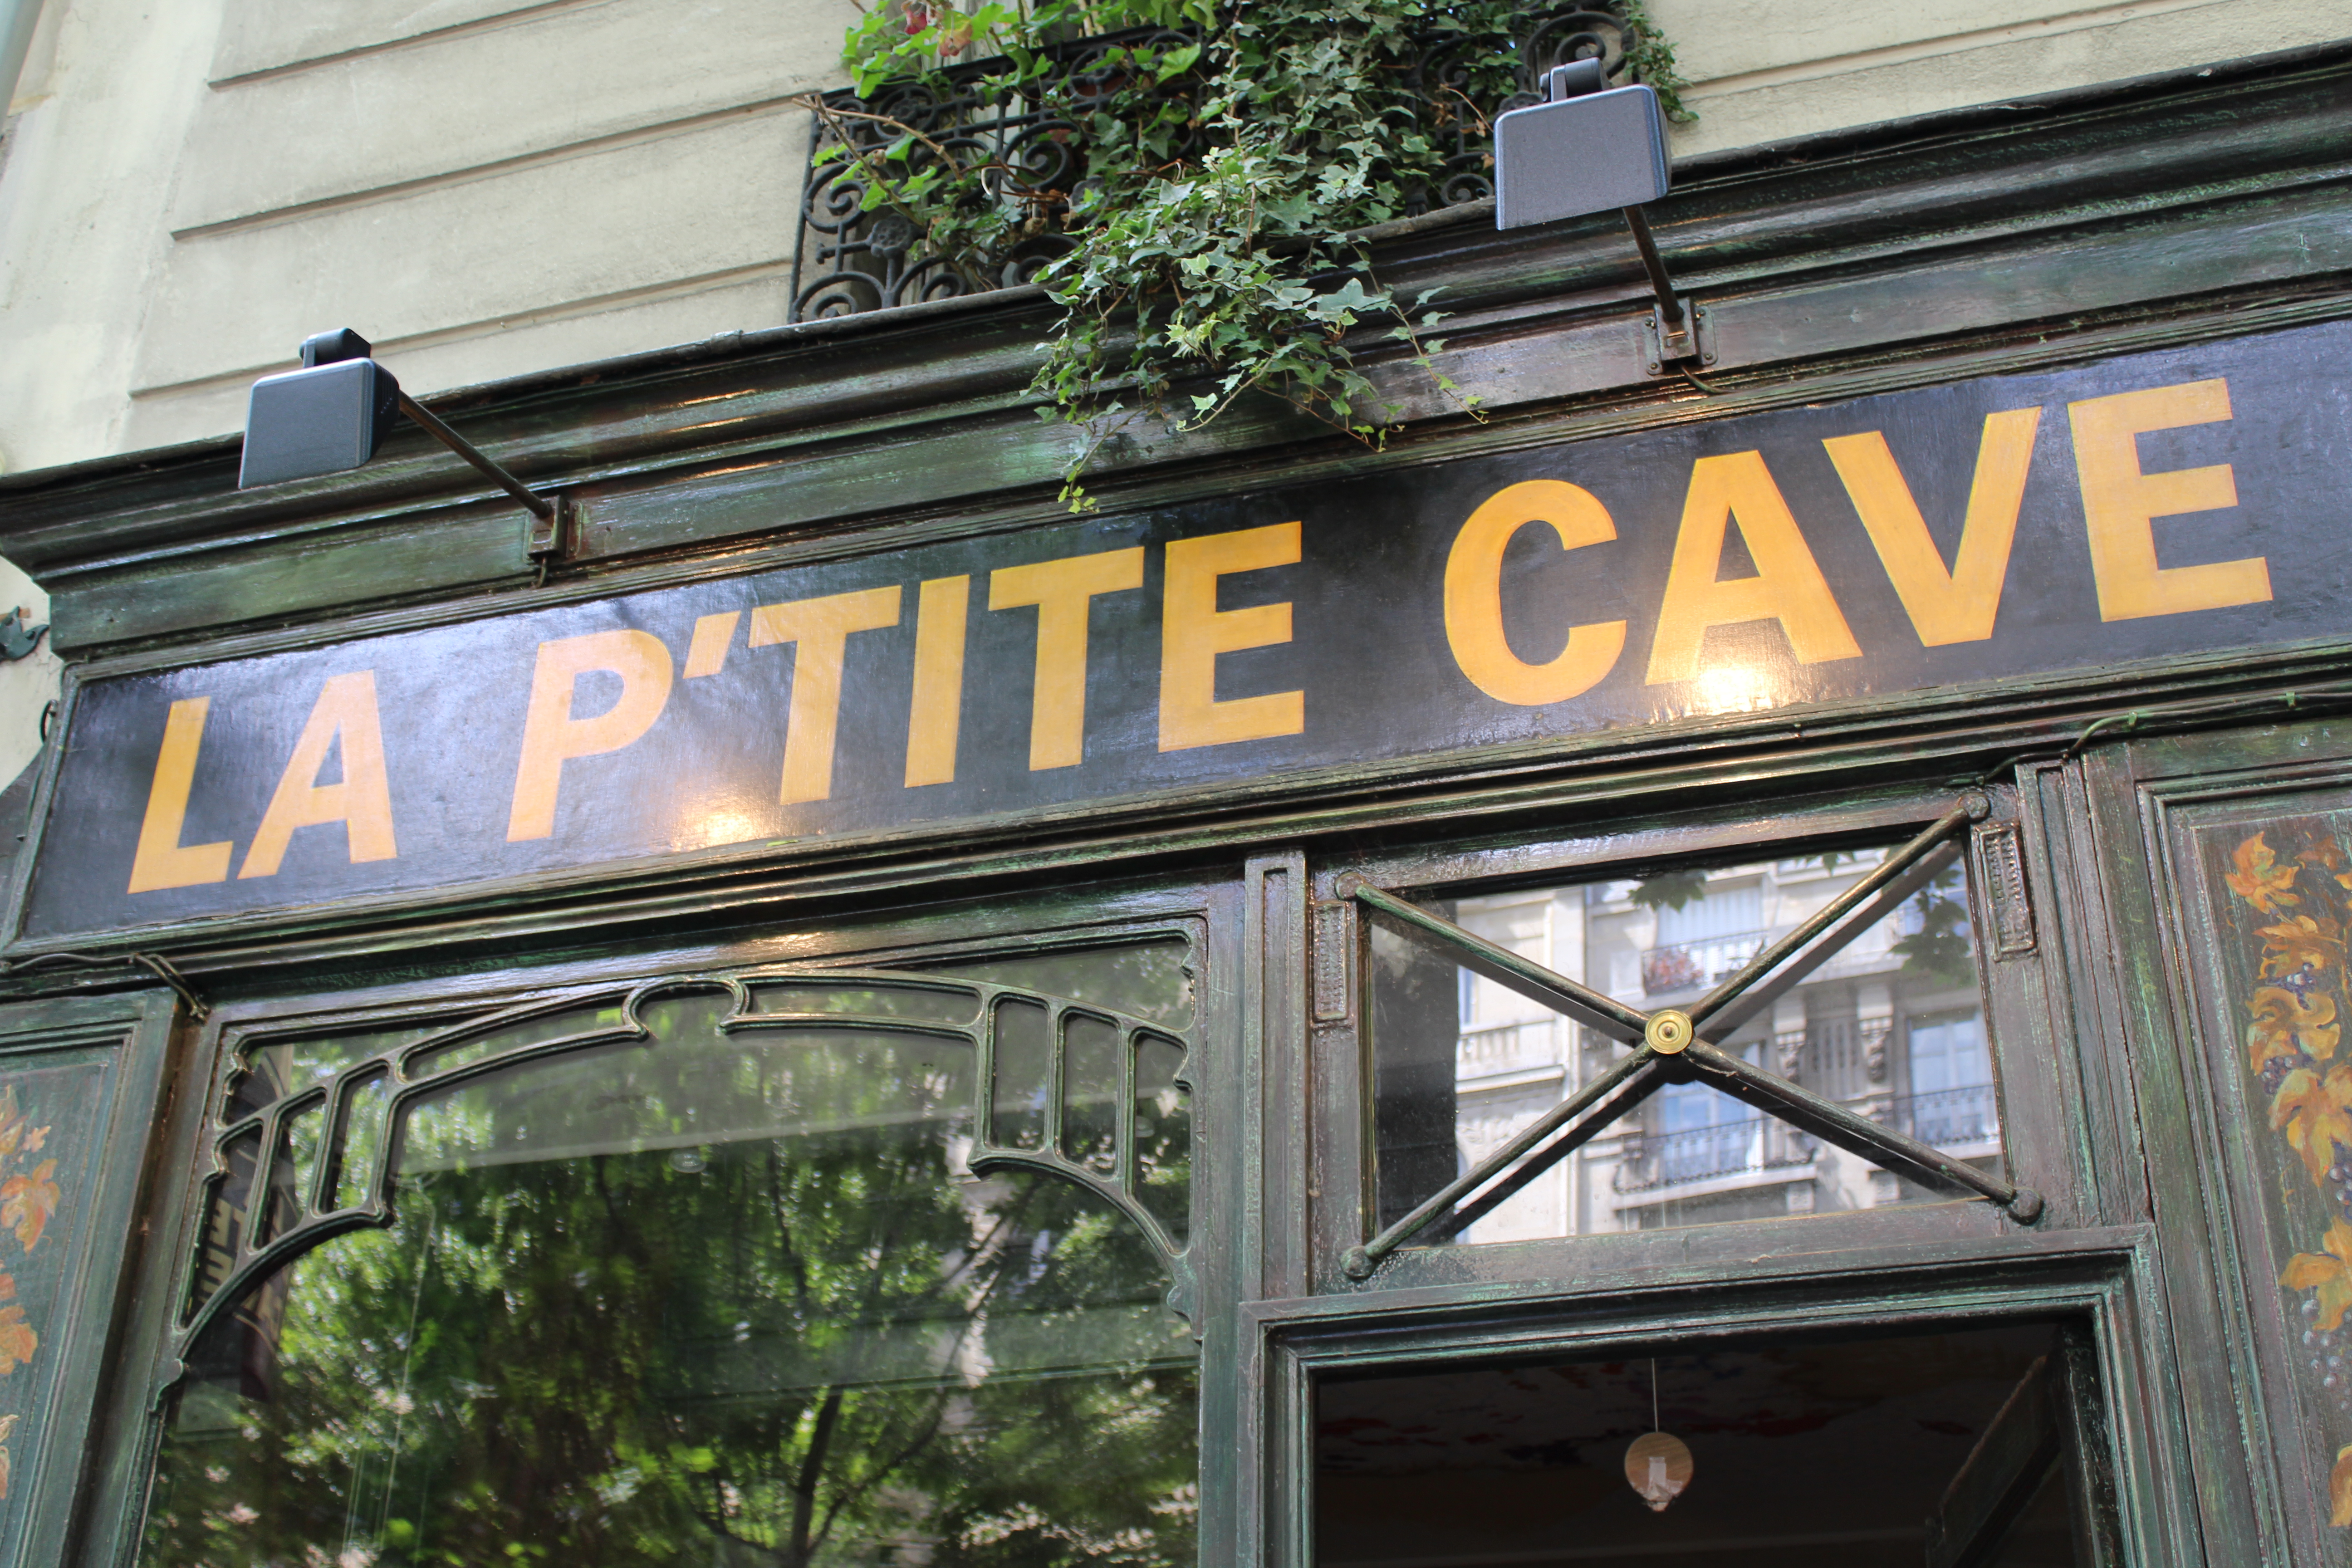 La P'tite Cave - Paris - Message In A Window